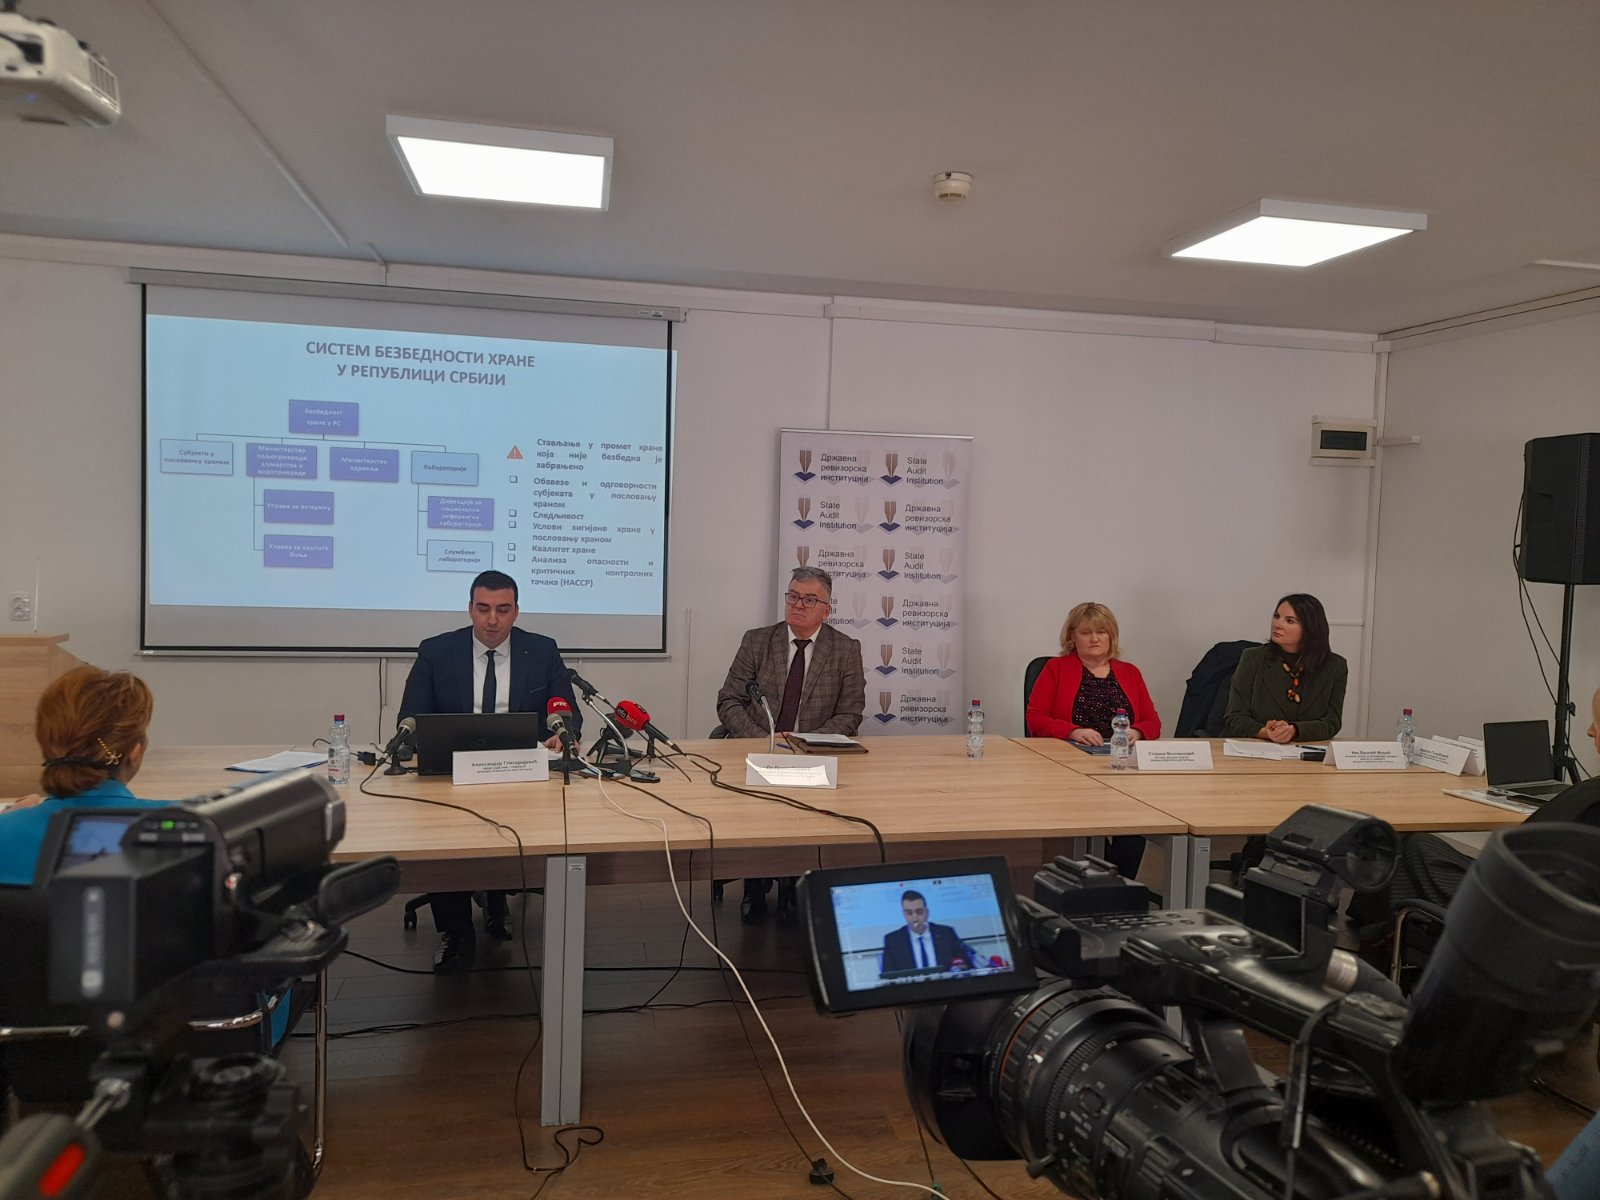 Представљен извештај о ревизији сврсисходности пословања „Безбедност хране у Републици Србији“